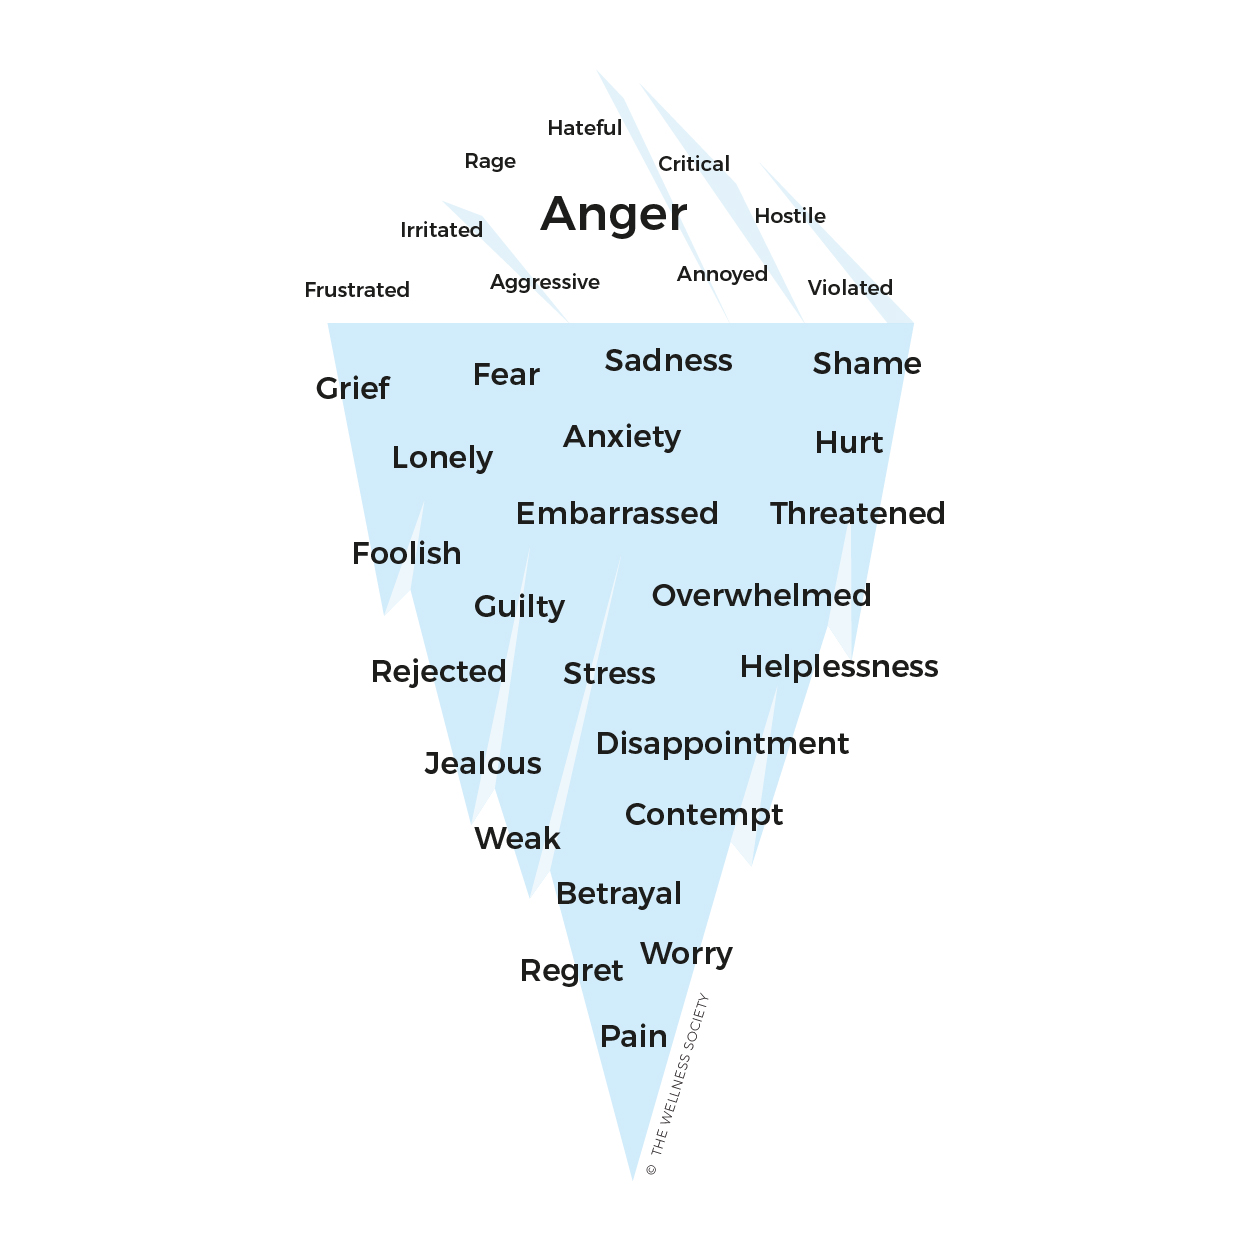 anger iceberg